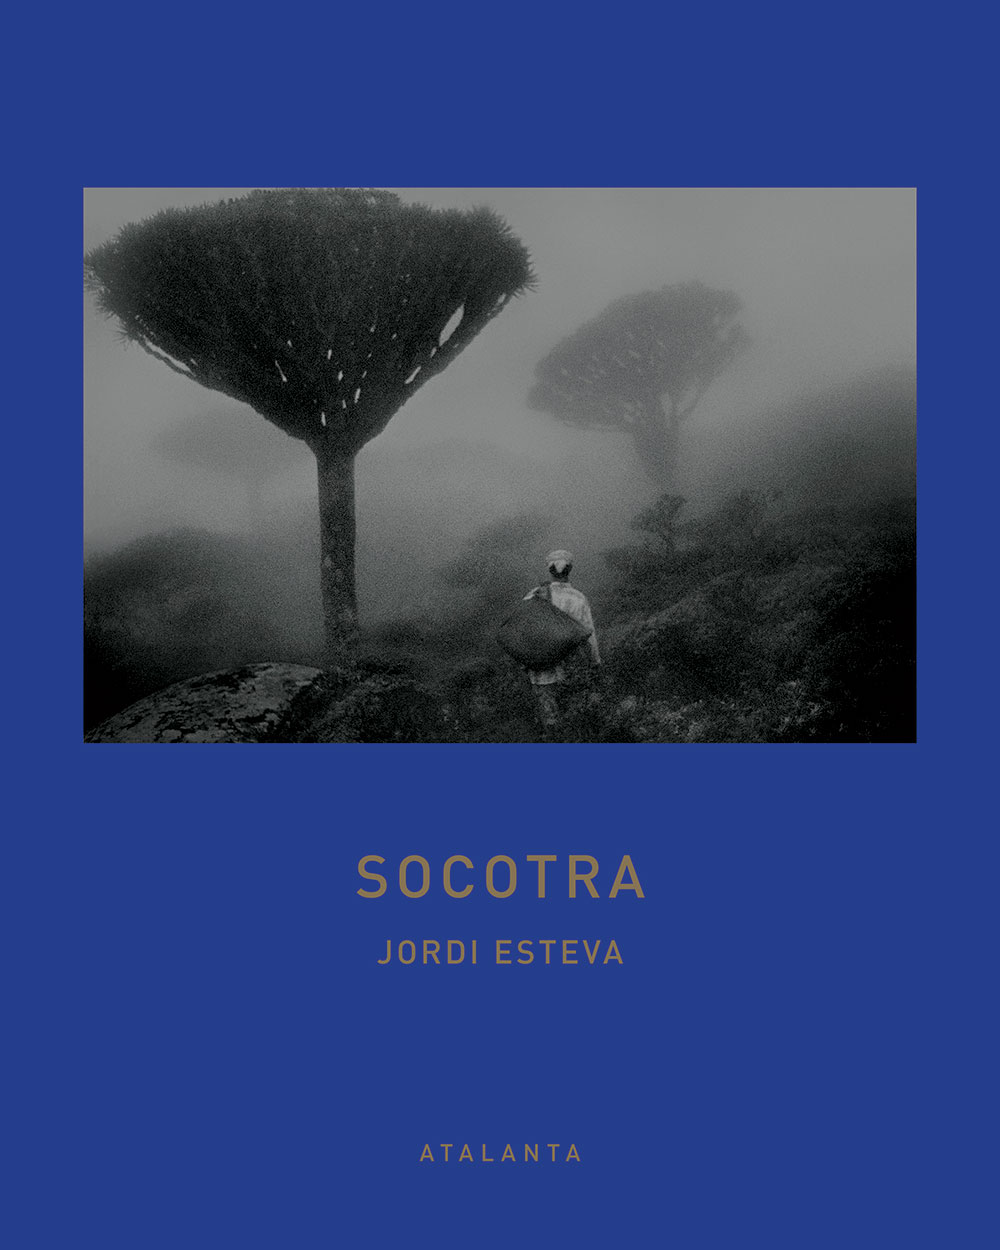 Socotra, libro de fotografías